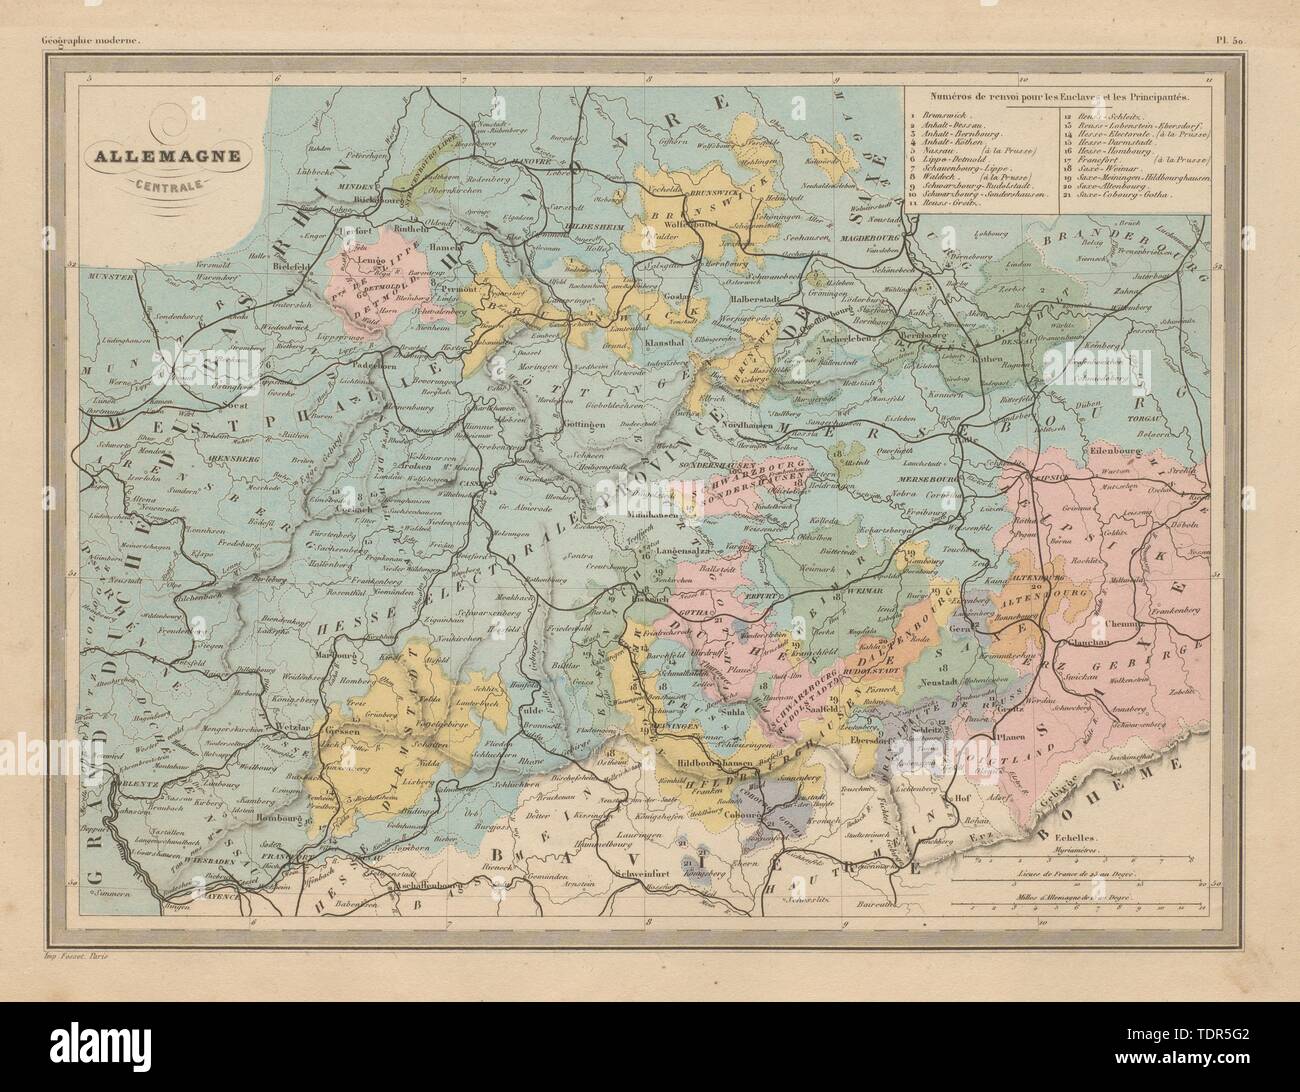 Allemagne Centrale. Zentrale Deutschland. MALTE - Brun c 1871 alte antike Karte chart Stockfoto